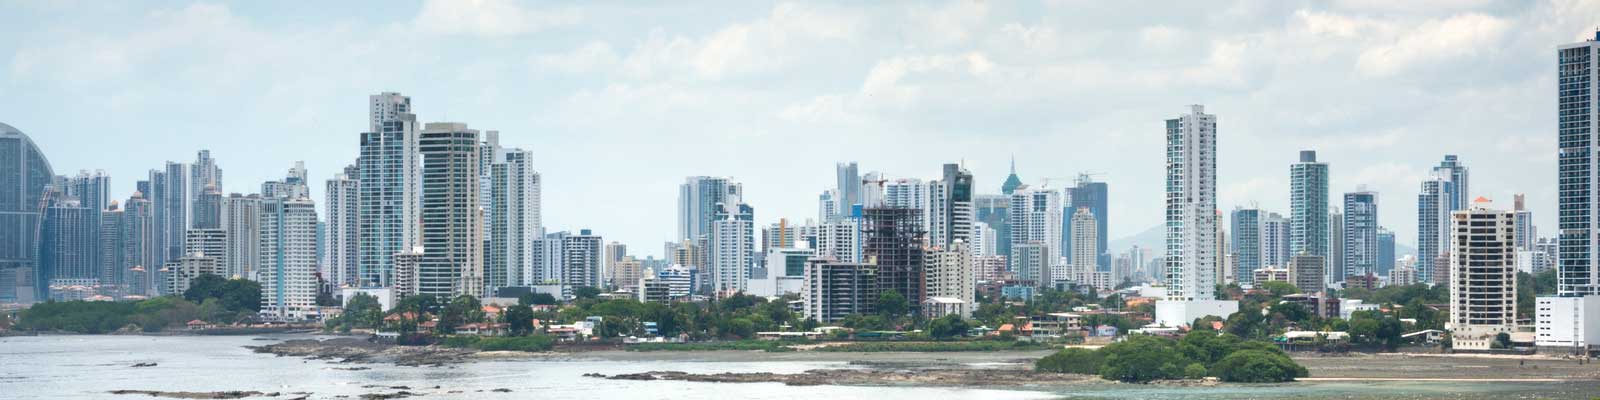 Panamá Immobilien - Ferienhaus, Luxusimmobilien, Strandimmobilie - Leben, Urlaub, Investieren